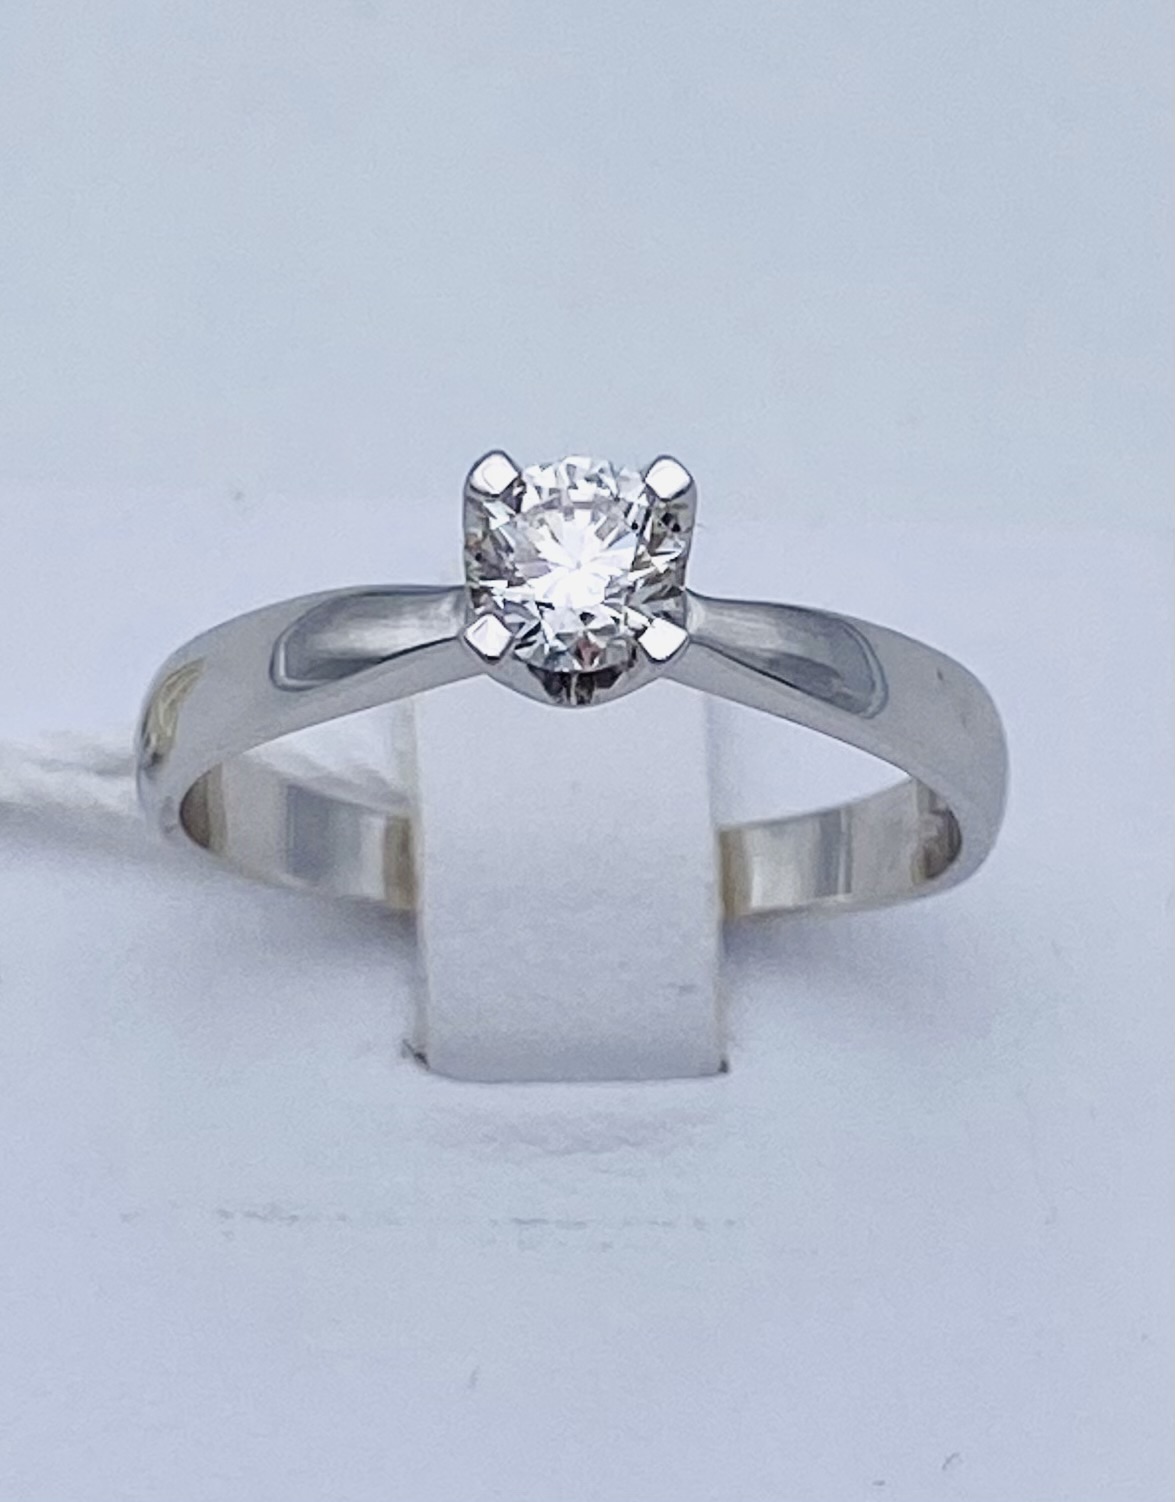 Anello solitario ROMANTIC diamanti in oro bianco 750% Art. AN 1422-1